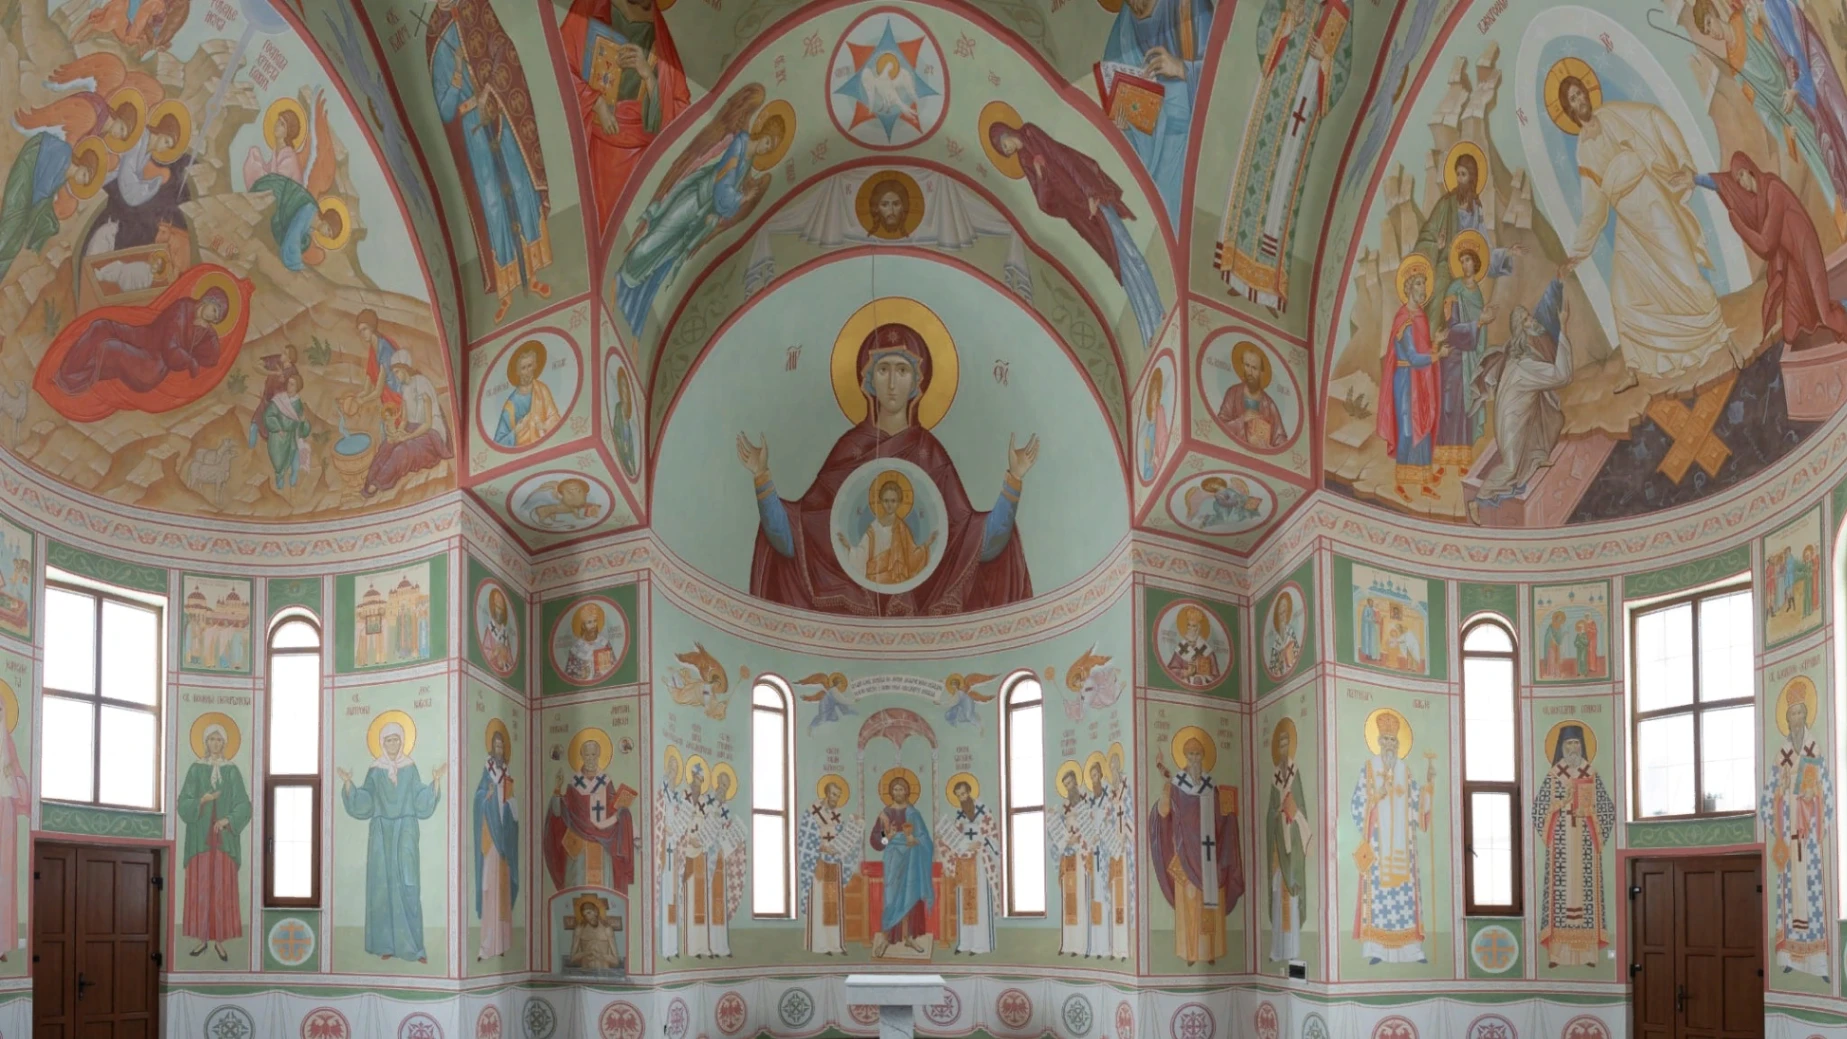 Ζωγραφική του μοναστηριού της ευλογημένης Ματρώνας της Μόσχας στο χωριό Ritesic στη Βοσνία και Ερζεγοβίνη